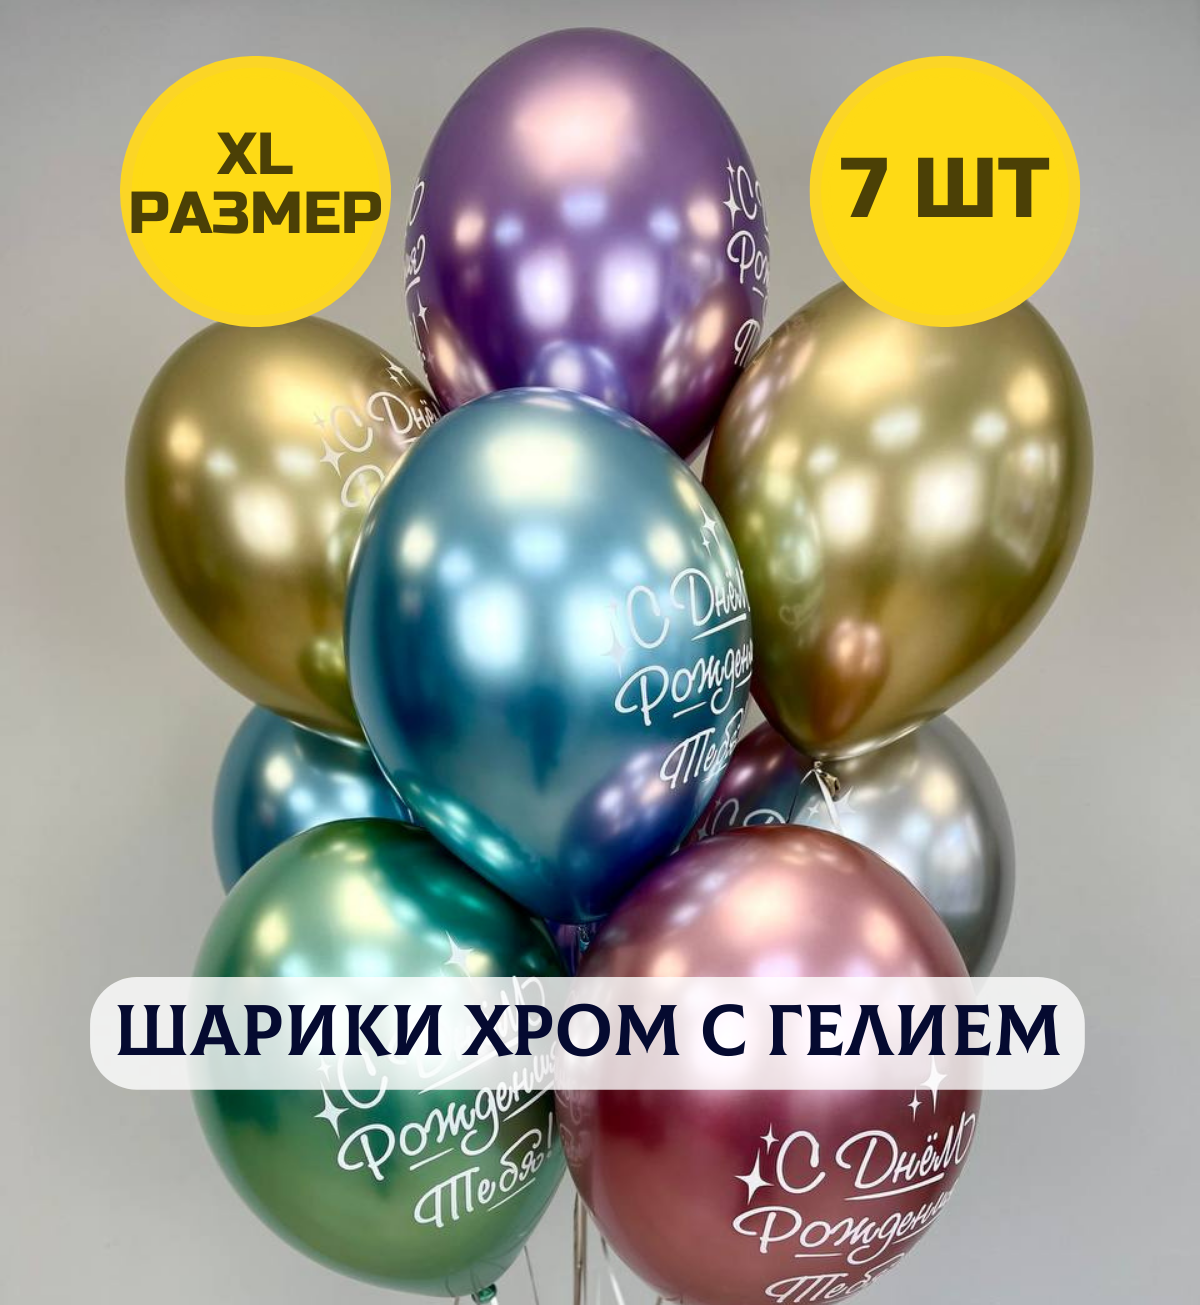 Воздушные шары С днем рождения тебя с гелием хром XL размер, 7 шт.